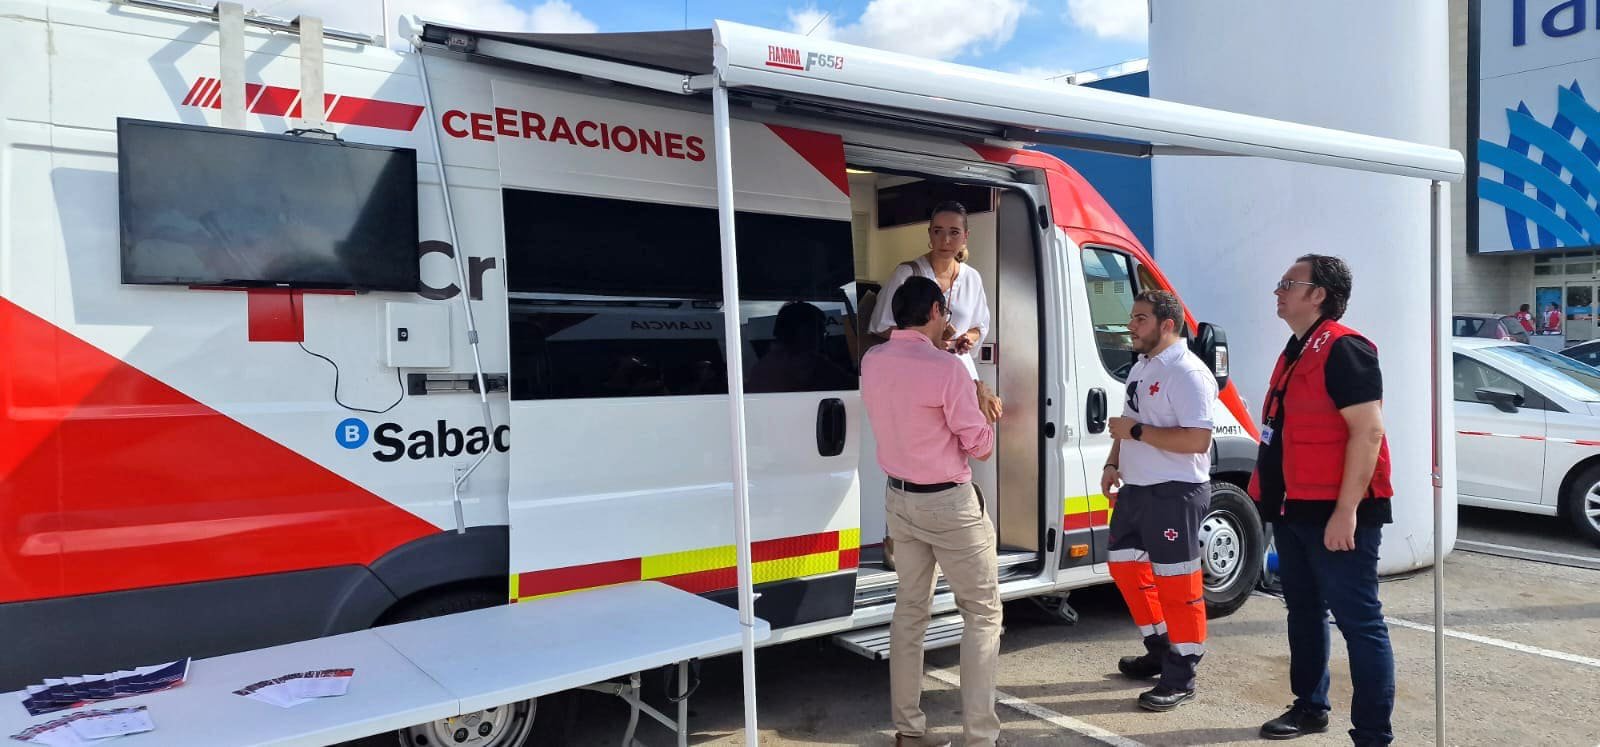 L'Aljub y Cruz Roja lanzan una campaña de primeros auxilios